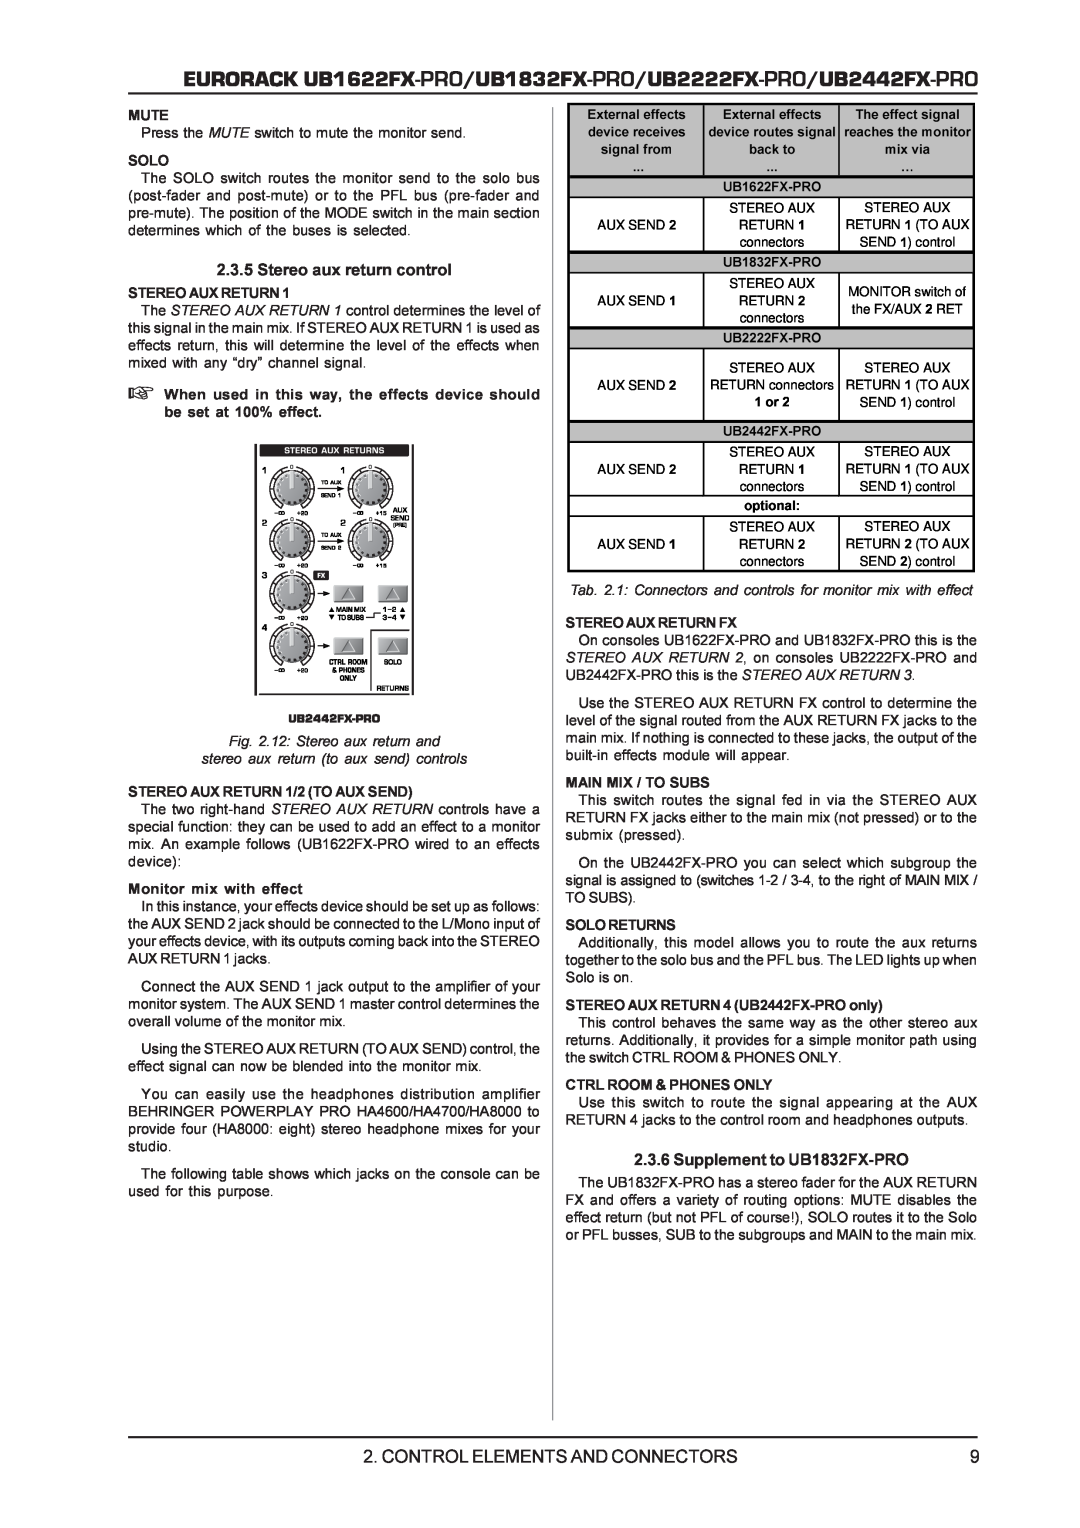 Behringer manual EURORACK UB1622FX-PRO/UB1832FX, PRO/UB2222FX-PRO/UB2442FX-PRO, Return, Control Elements And Connectors 